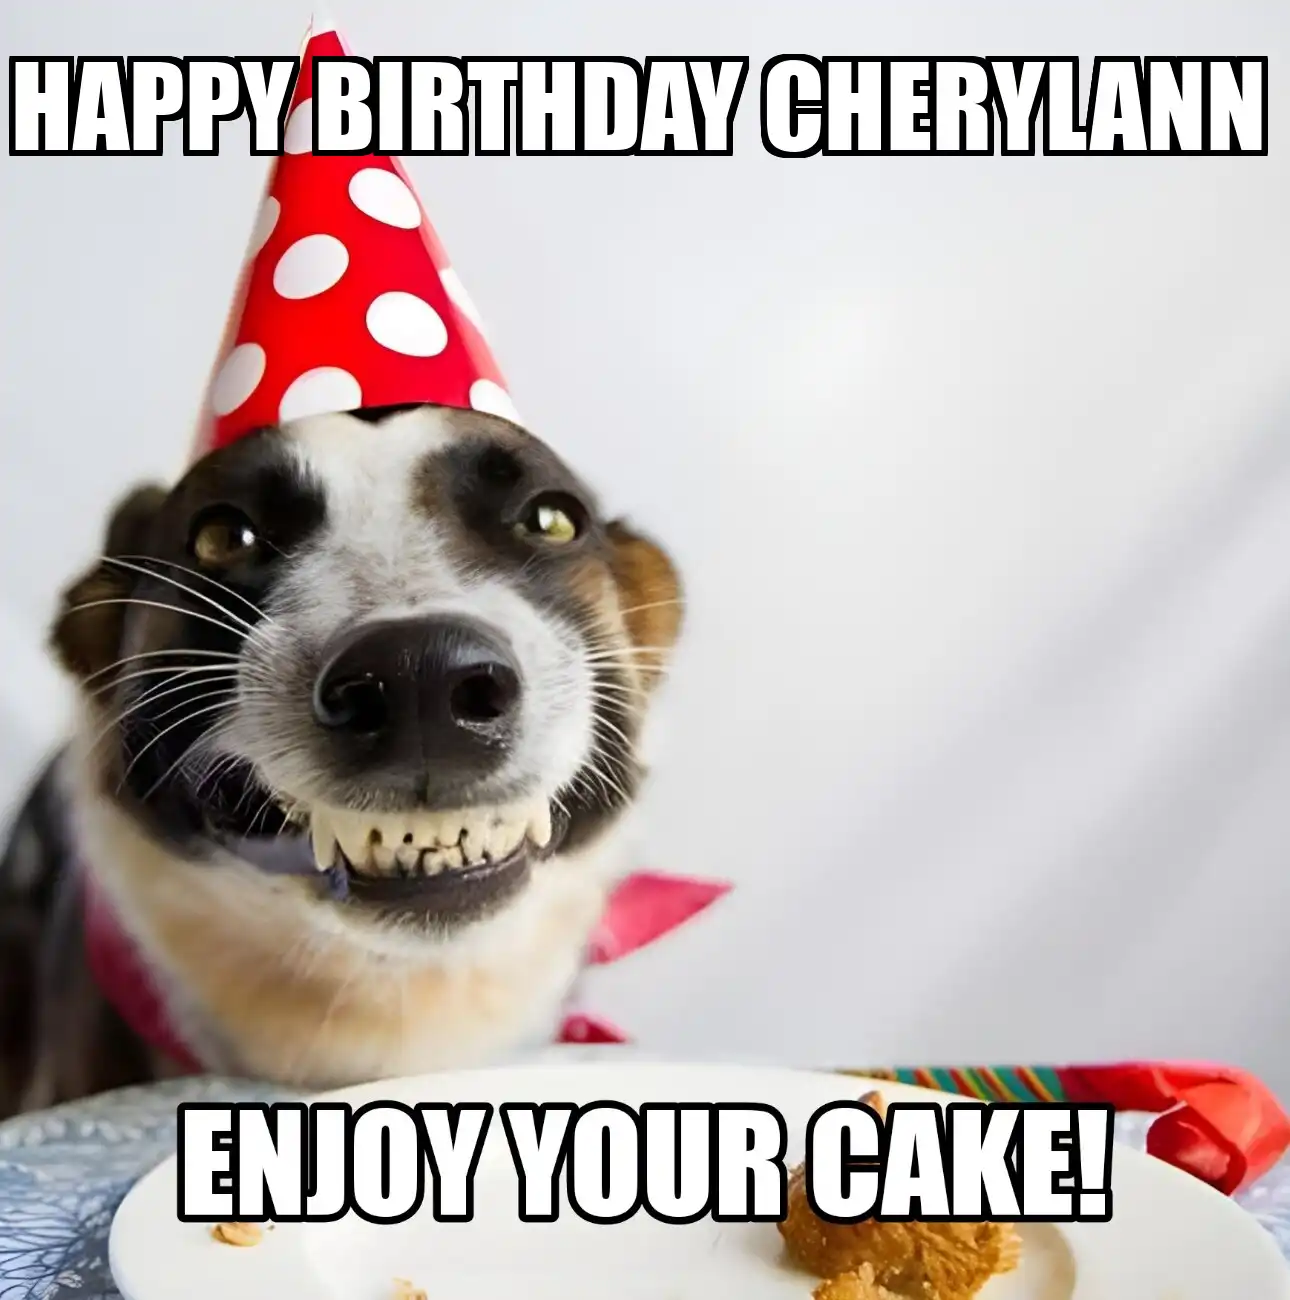 Happy Birthday Cherylann Enjoy Your Cake Dog Meme